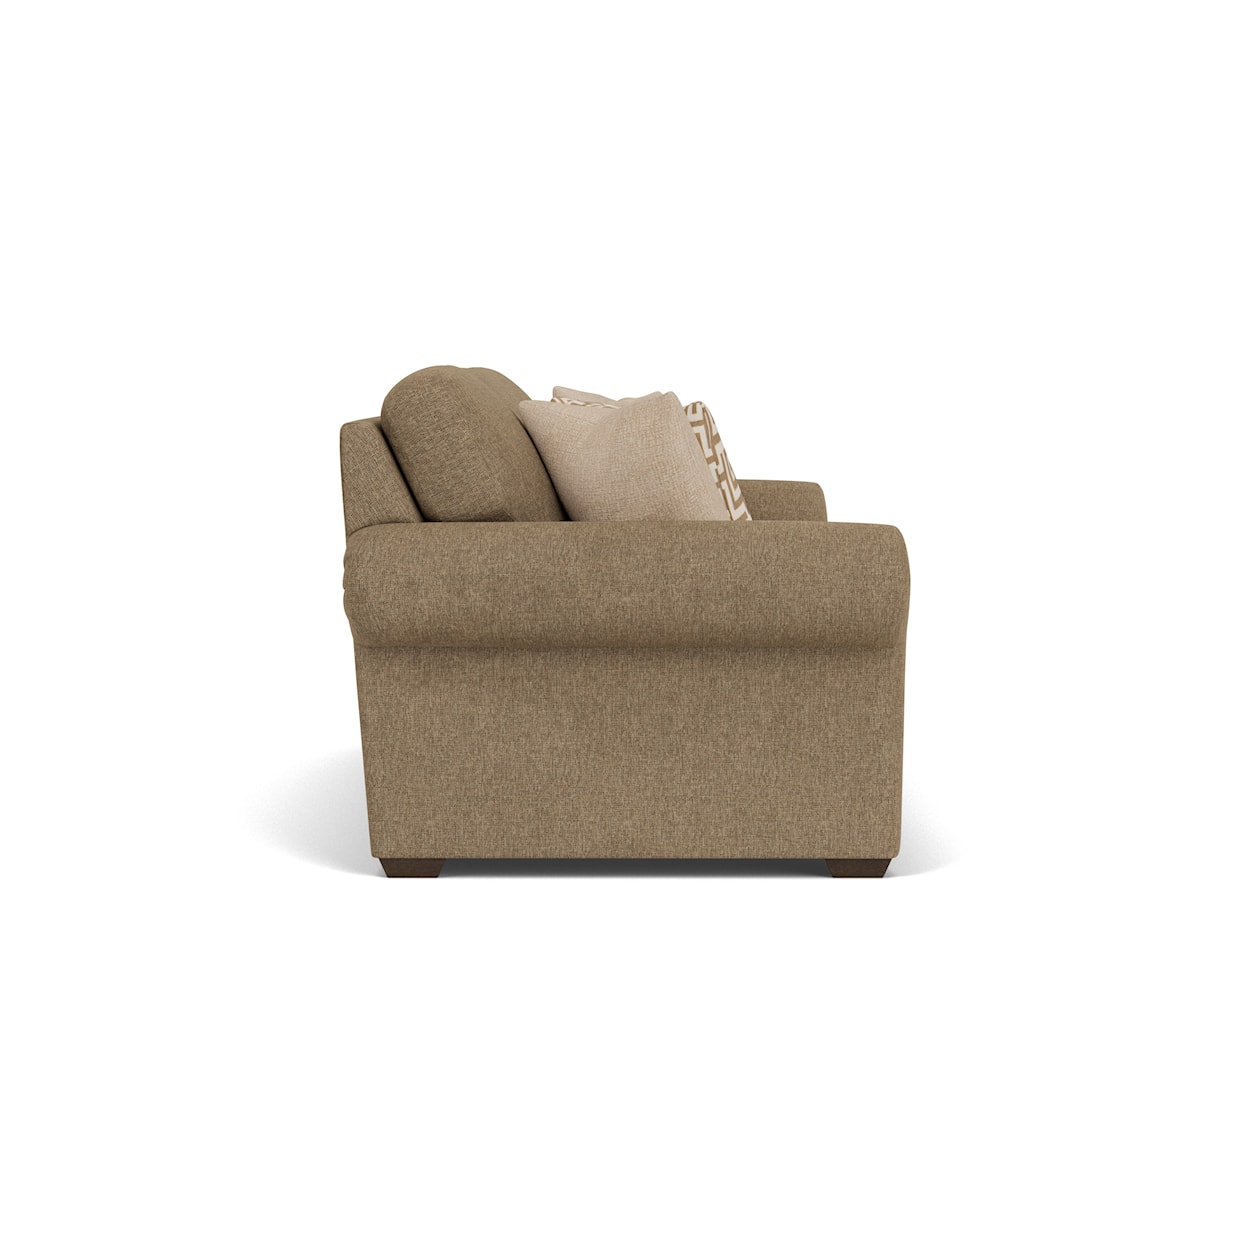 Flexsteel Randall 93" Three-Cushion Sofa